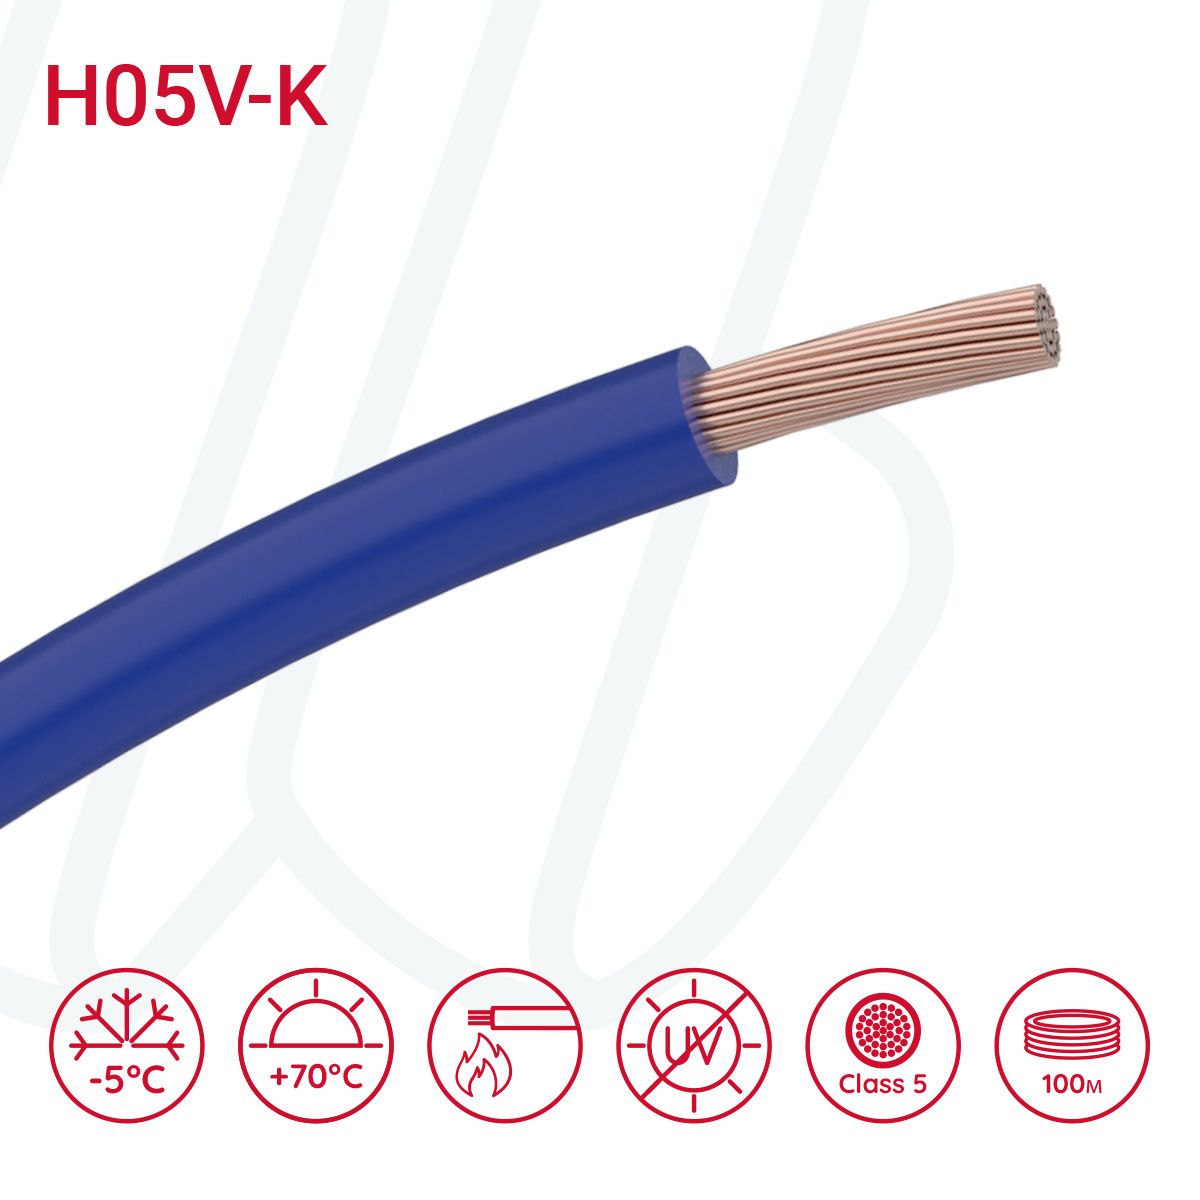 Провід монтажний гнучкий H05V-K 0.5 мм² ультрамариновий синій RAL 5002, 01, 0.5